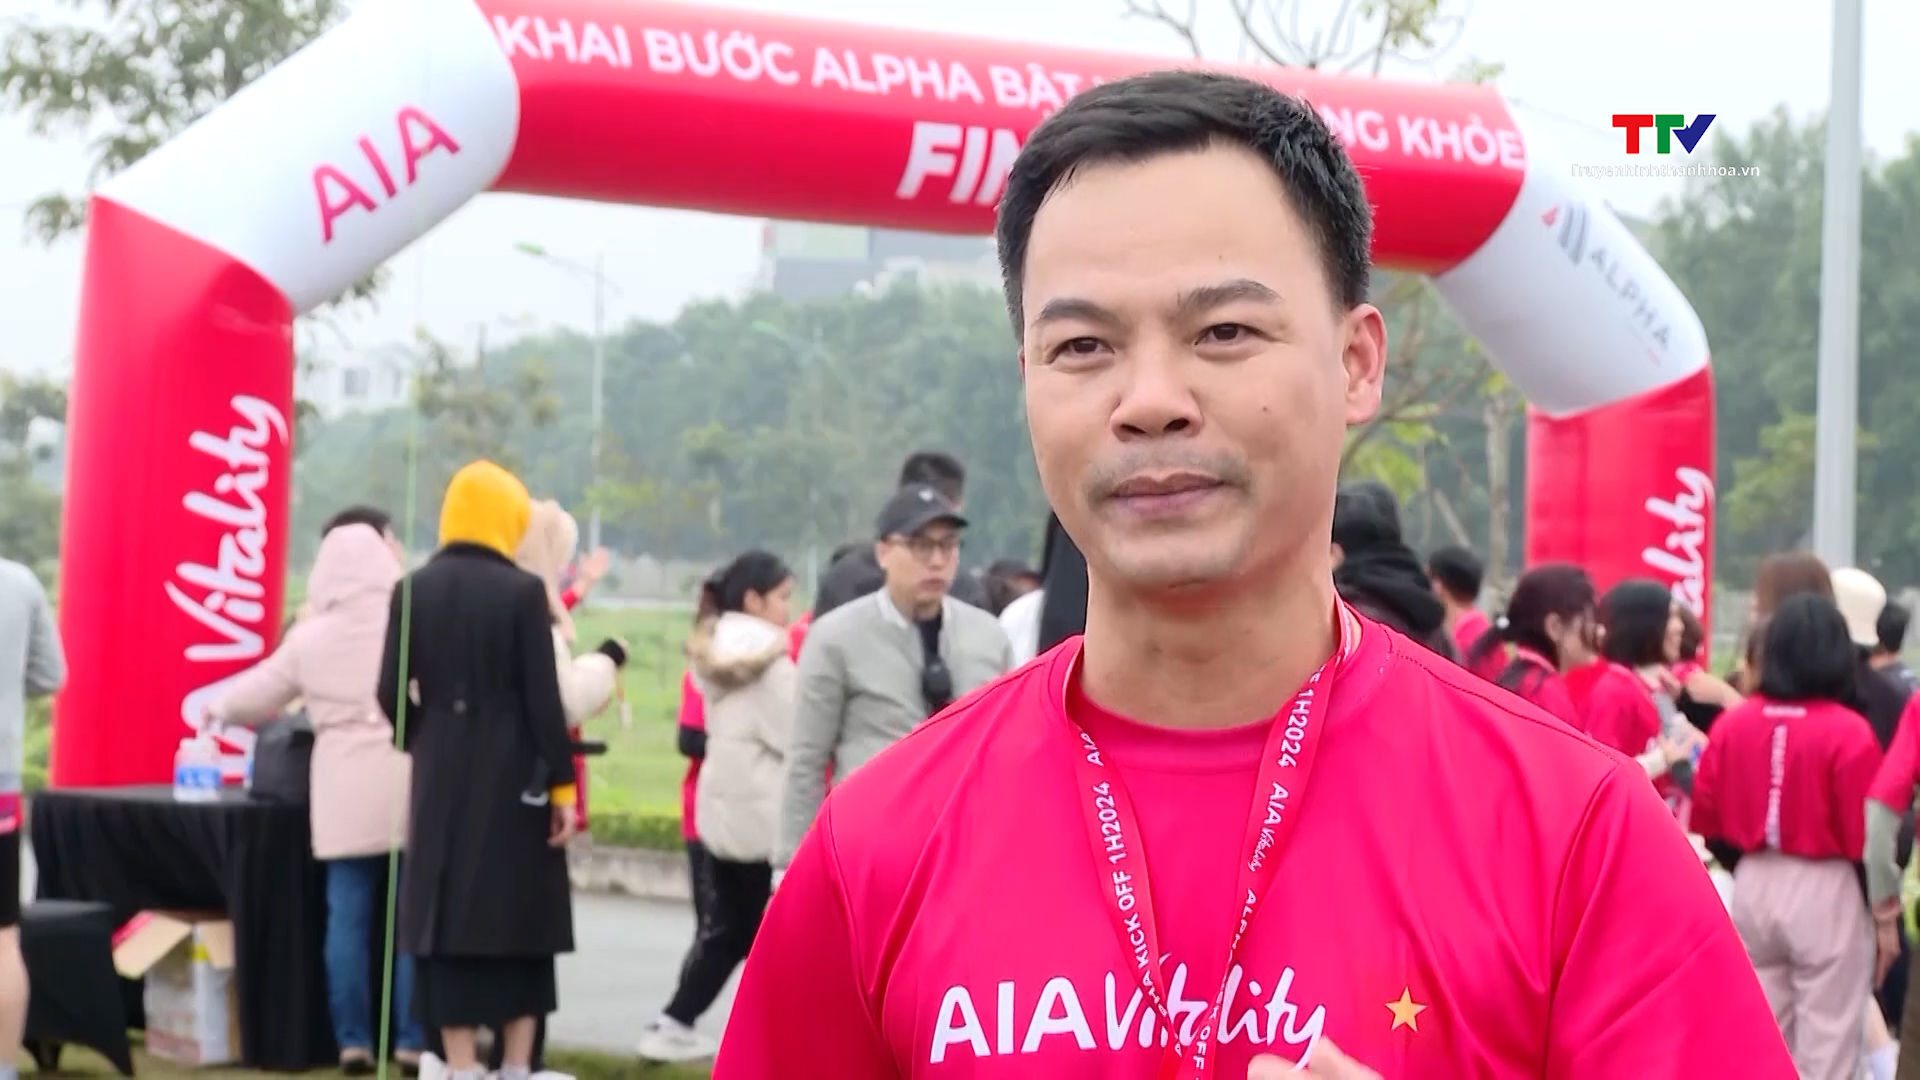 AIA Việt Nam tổ chức Fun Run "Khai bước Alpha, bật Mood sống khỏe" tại Thanh Hóa - Ảnh 1.